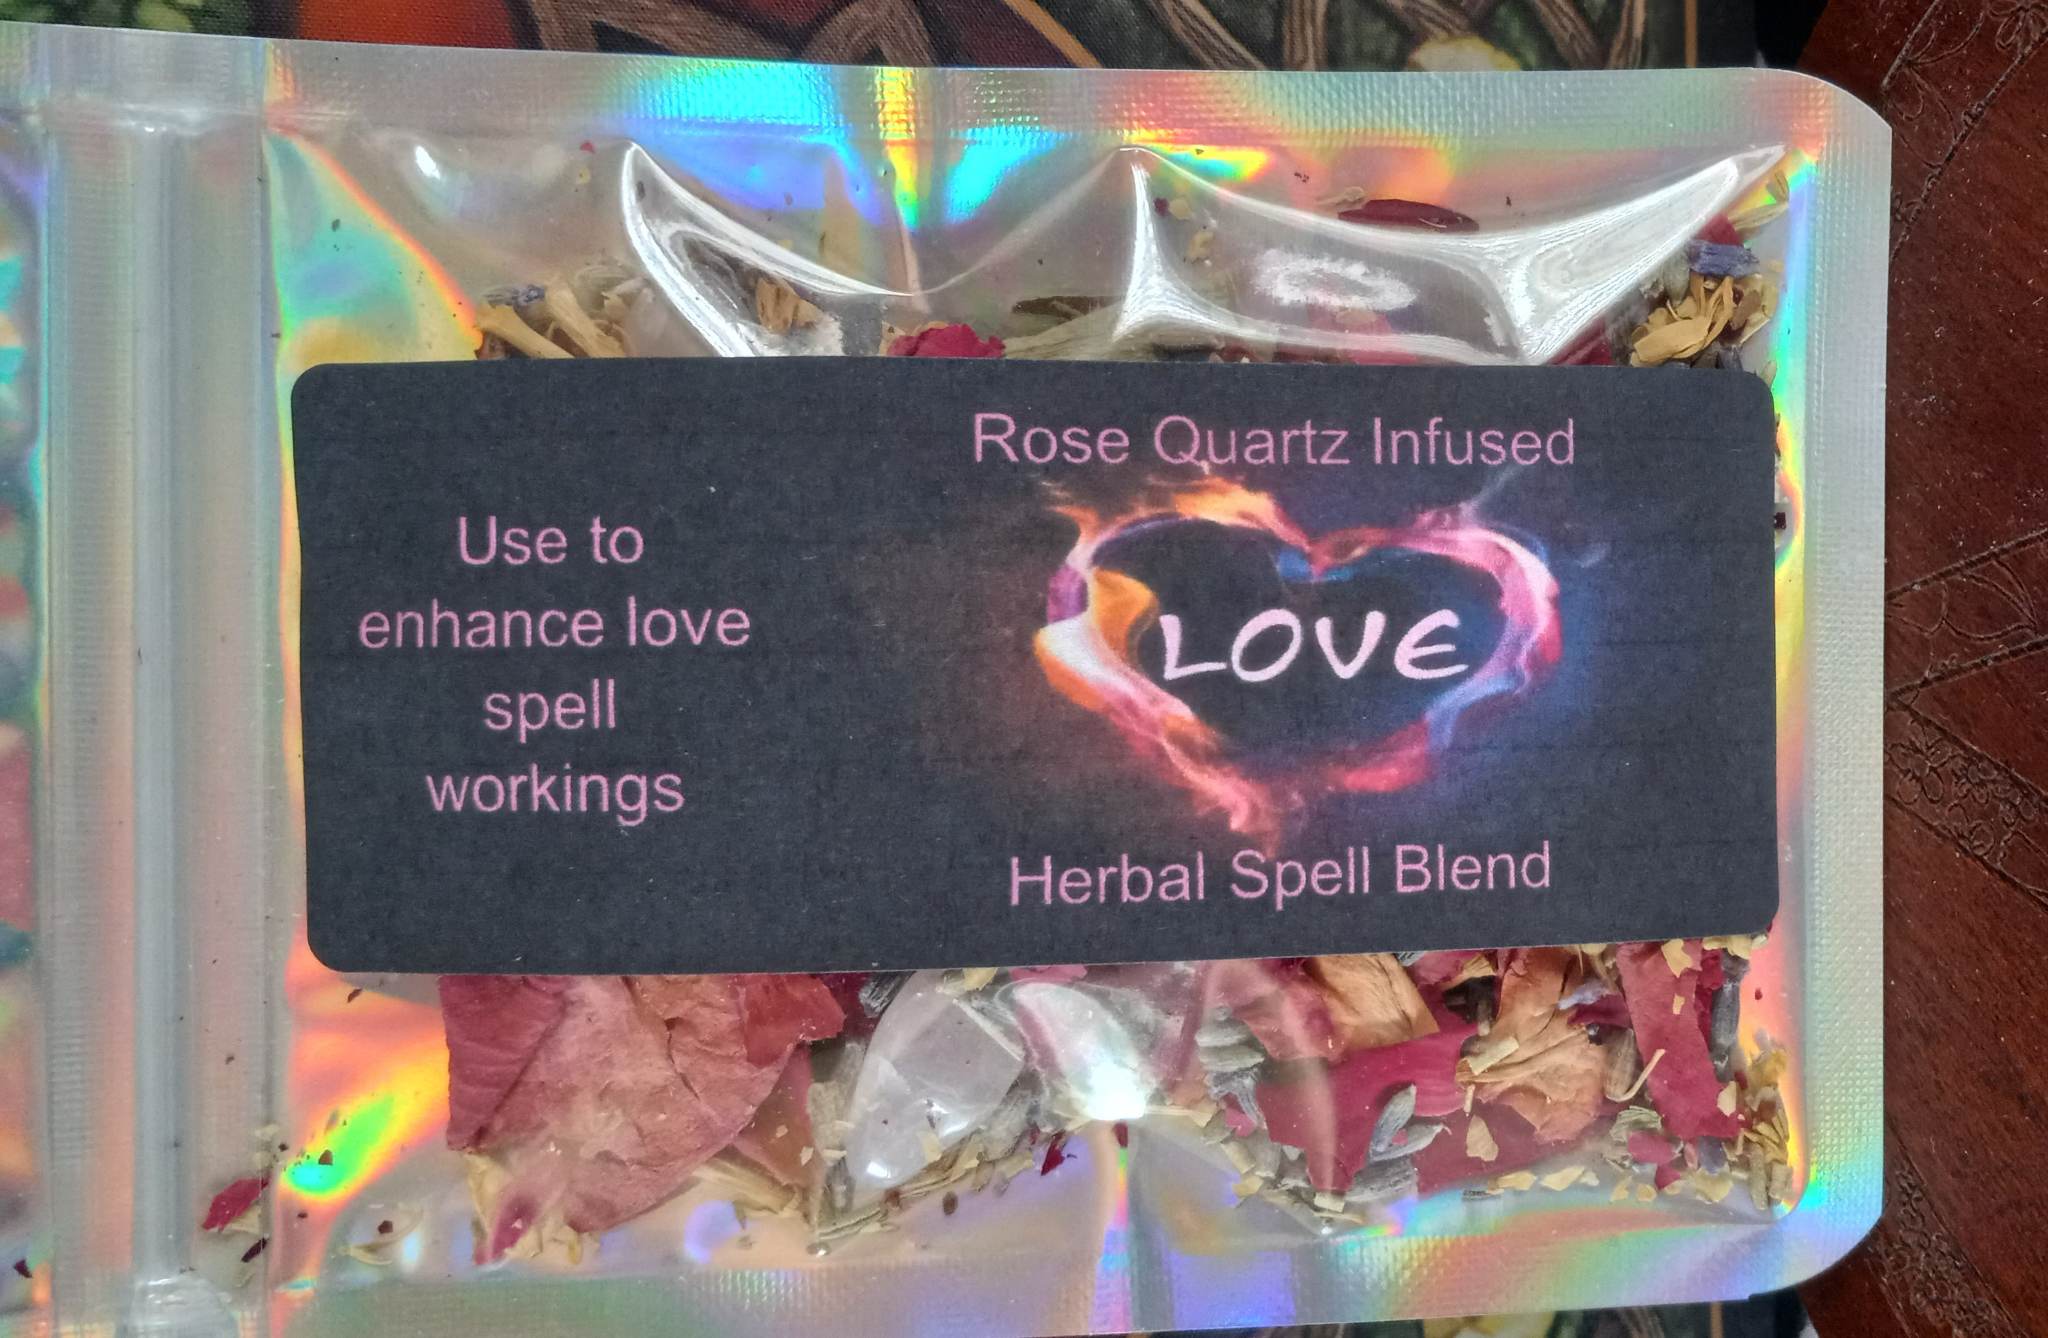 Rose Quartz Infused Love Herbal Spell Blend